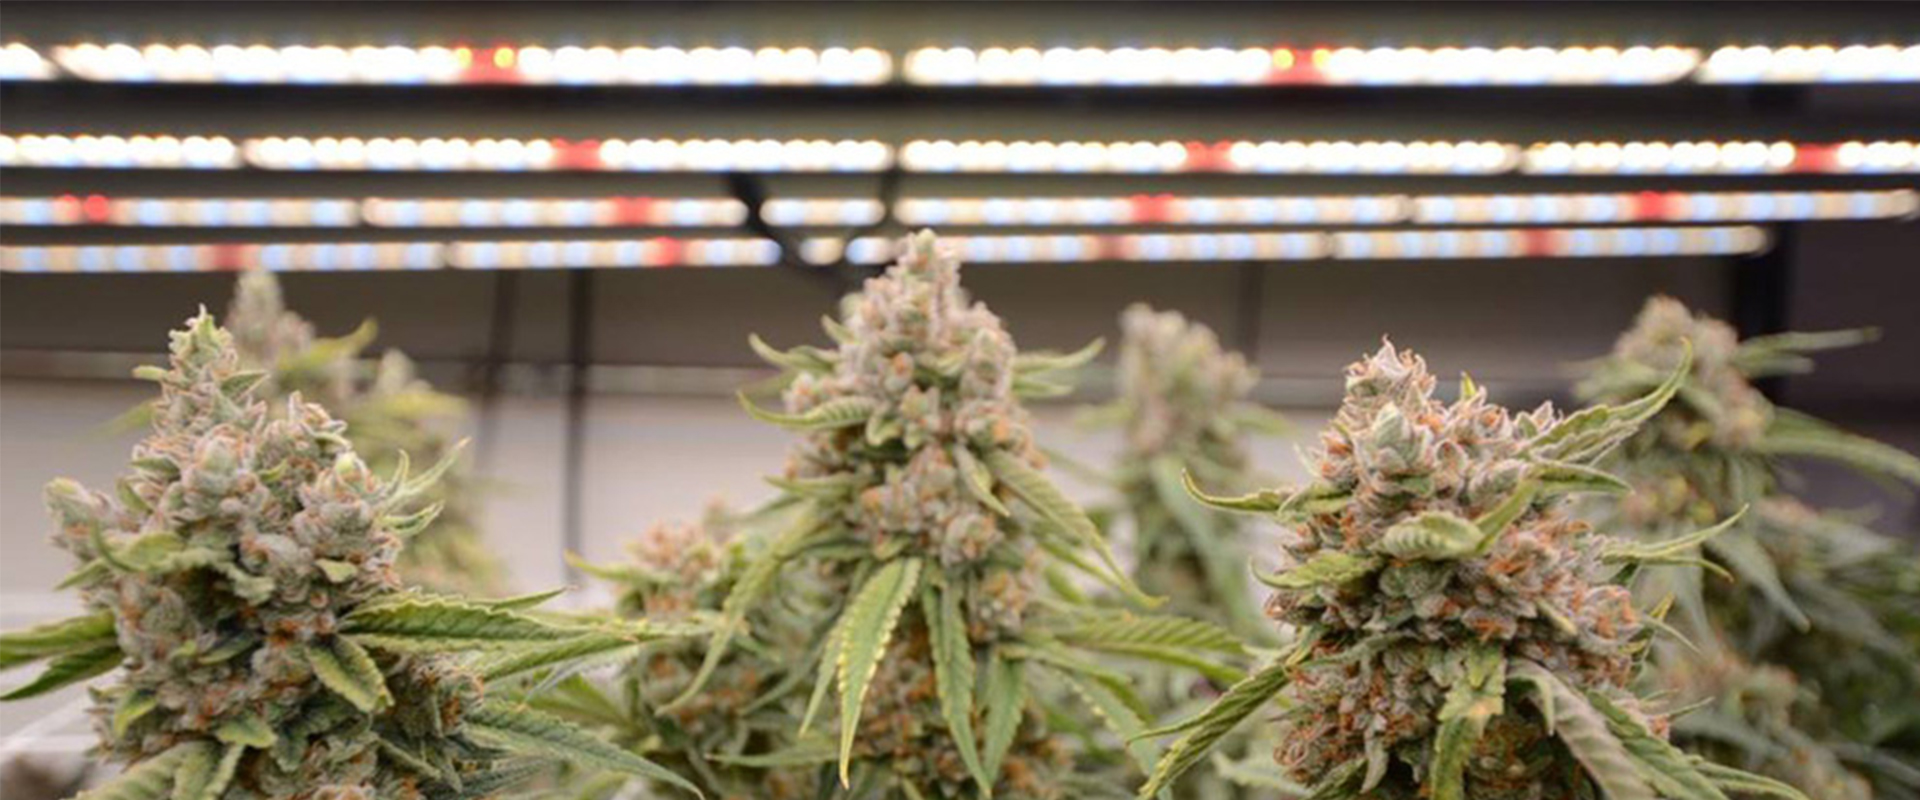 Cannabis Led Grow Light